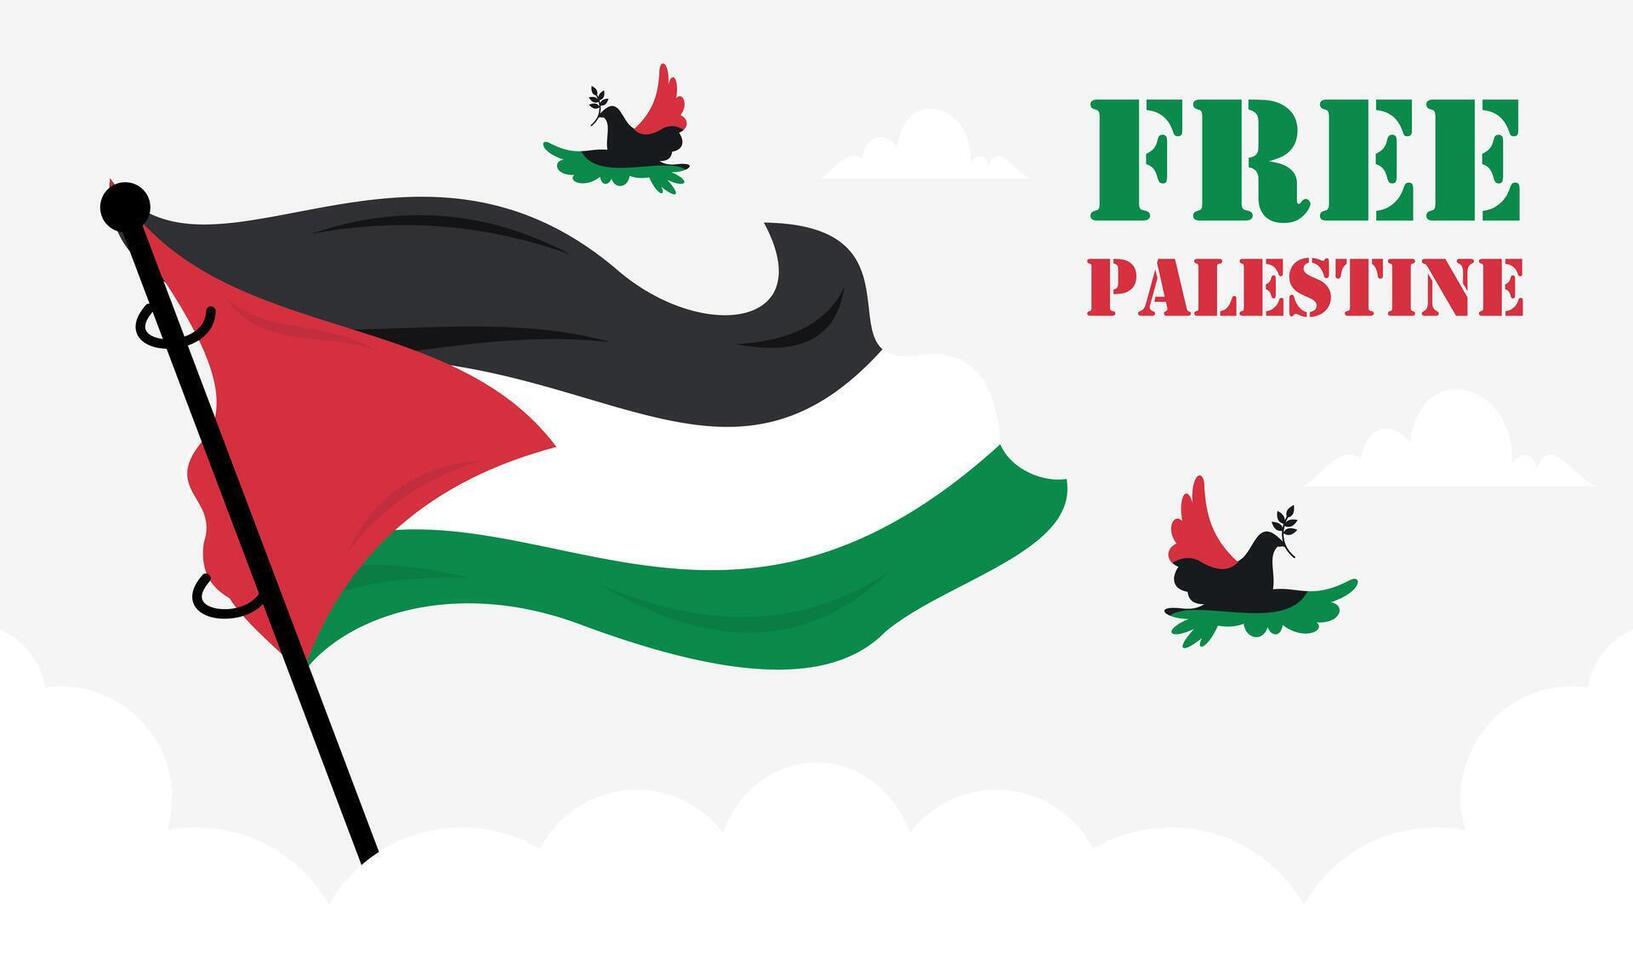 dibujado a mano gratis palestina vive asunto. concepto de libertad y paz ilustración. vector